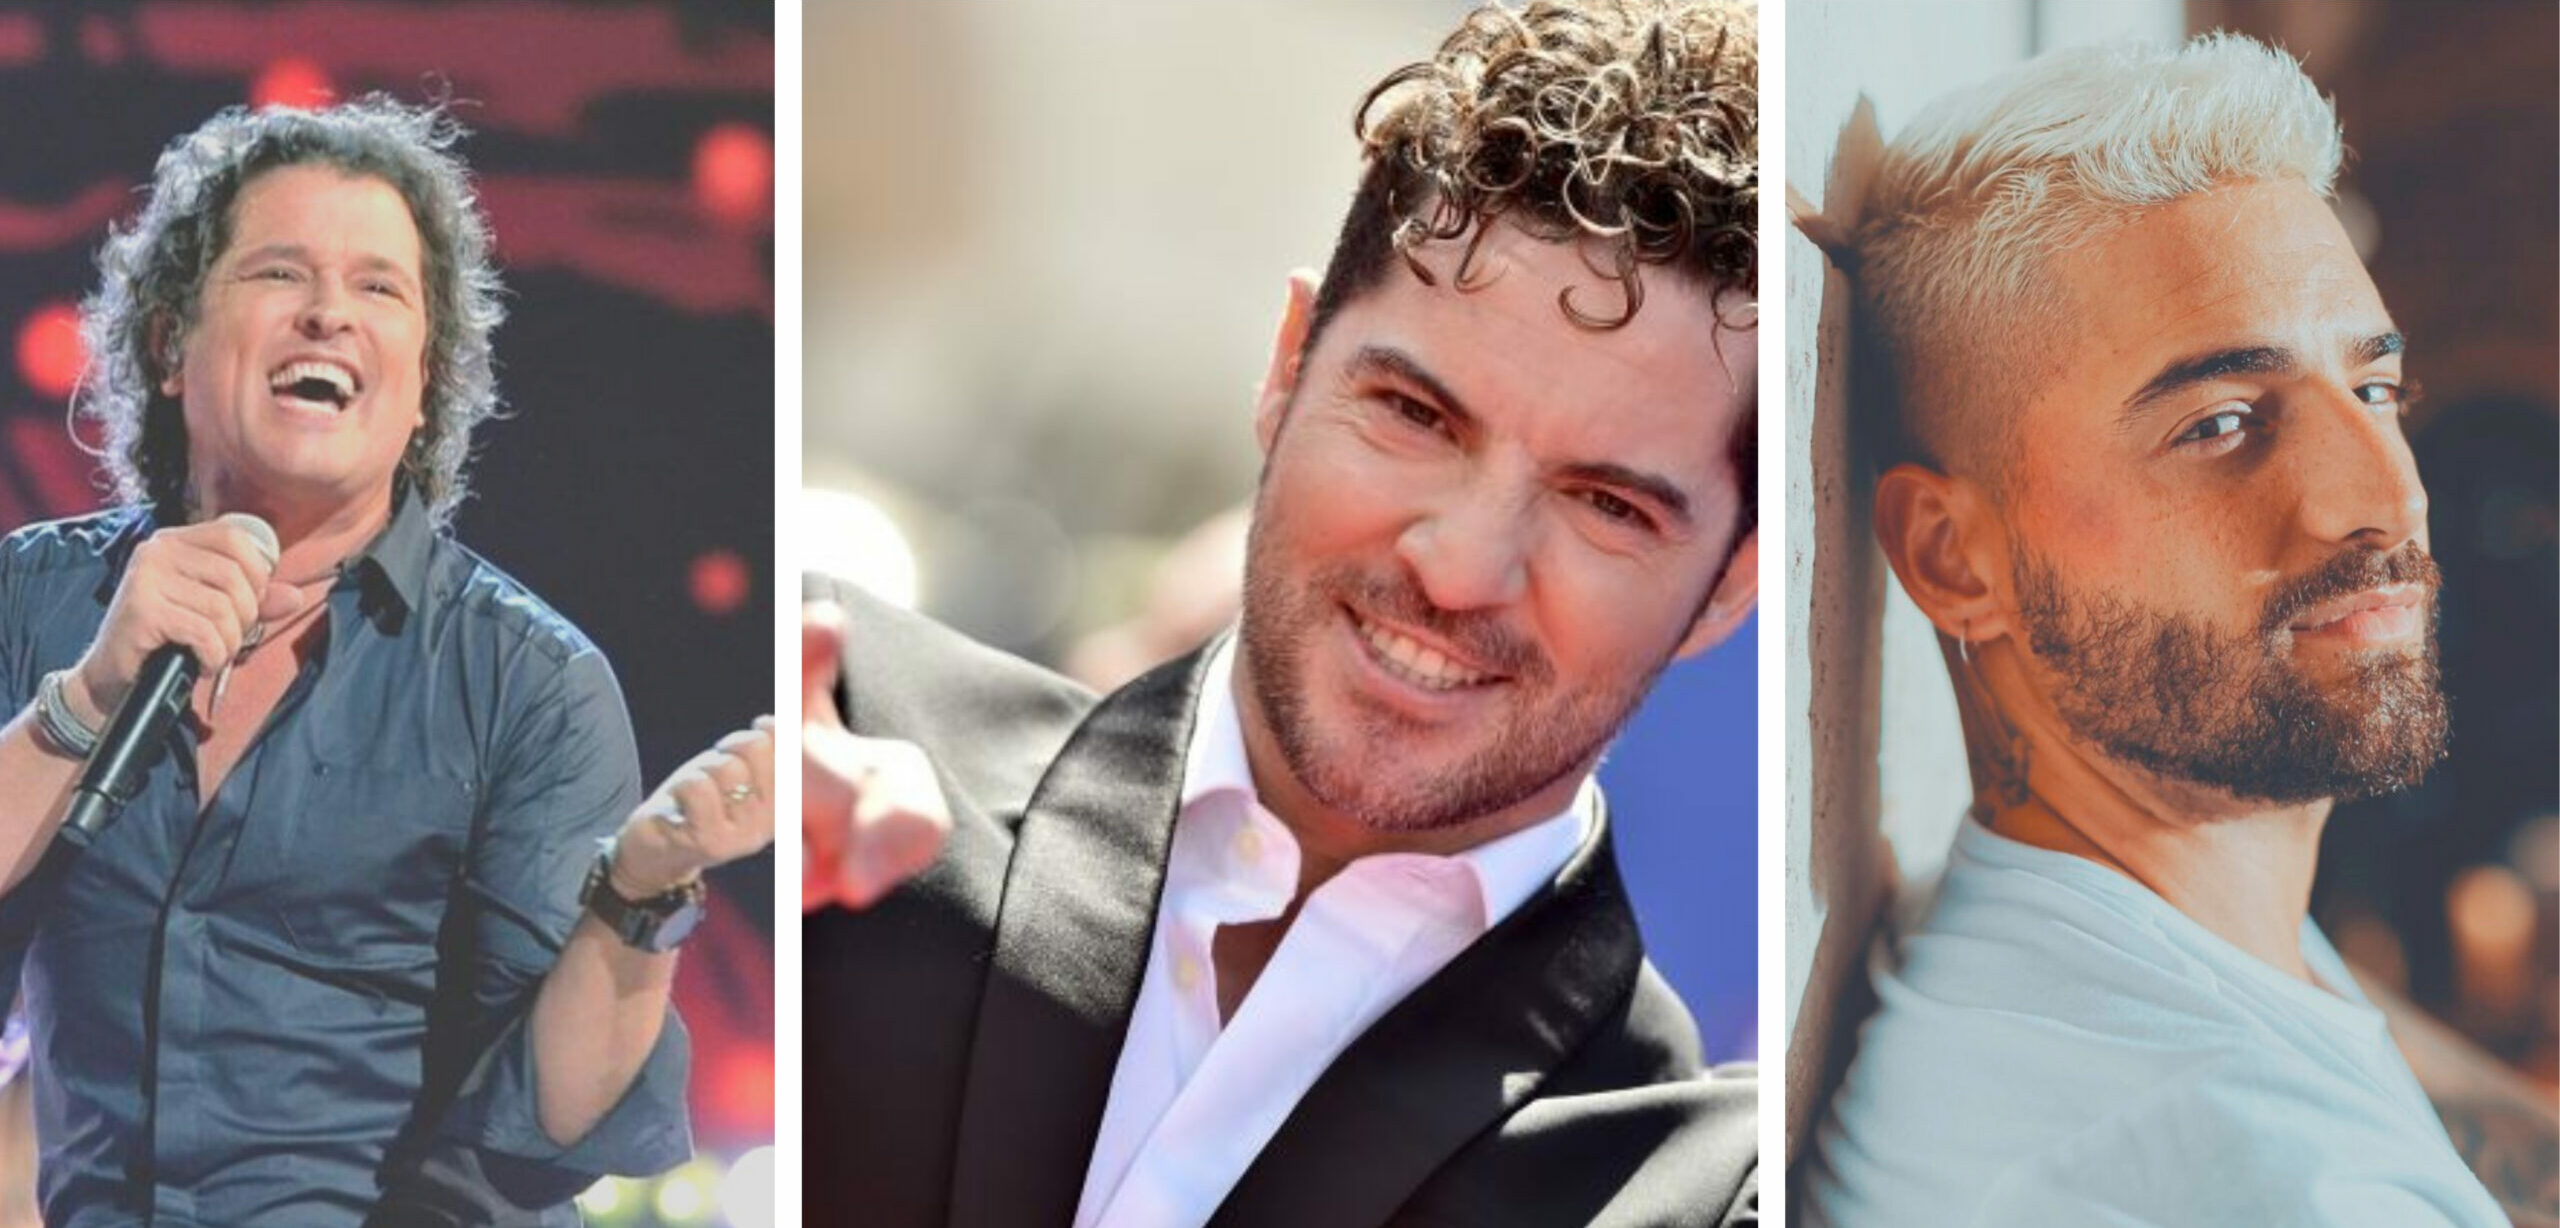 Carlos Vives, Bisbal y Maluma actuarán en los Latin American Music Awards